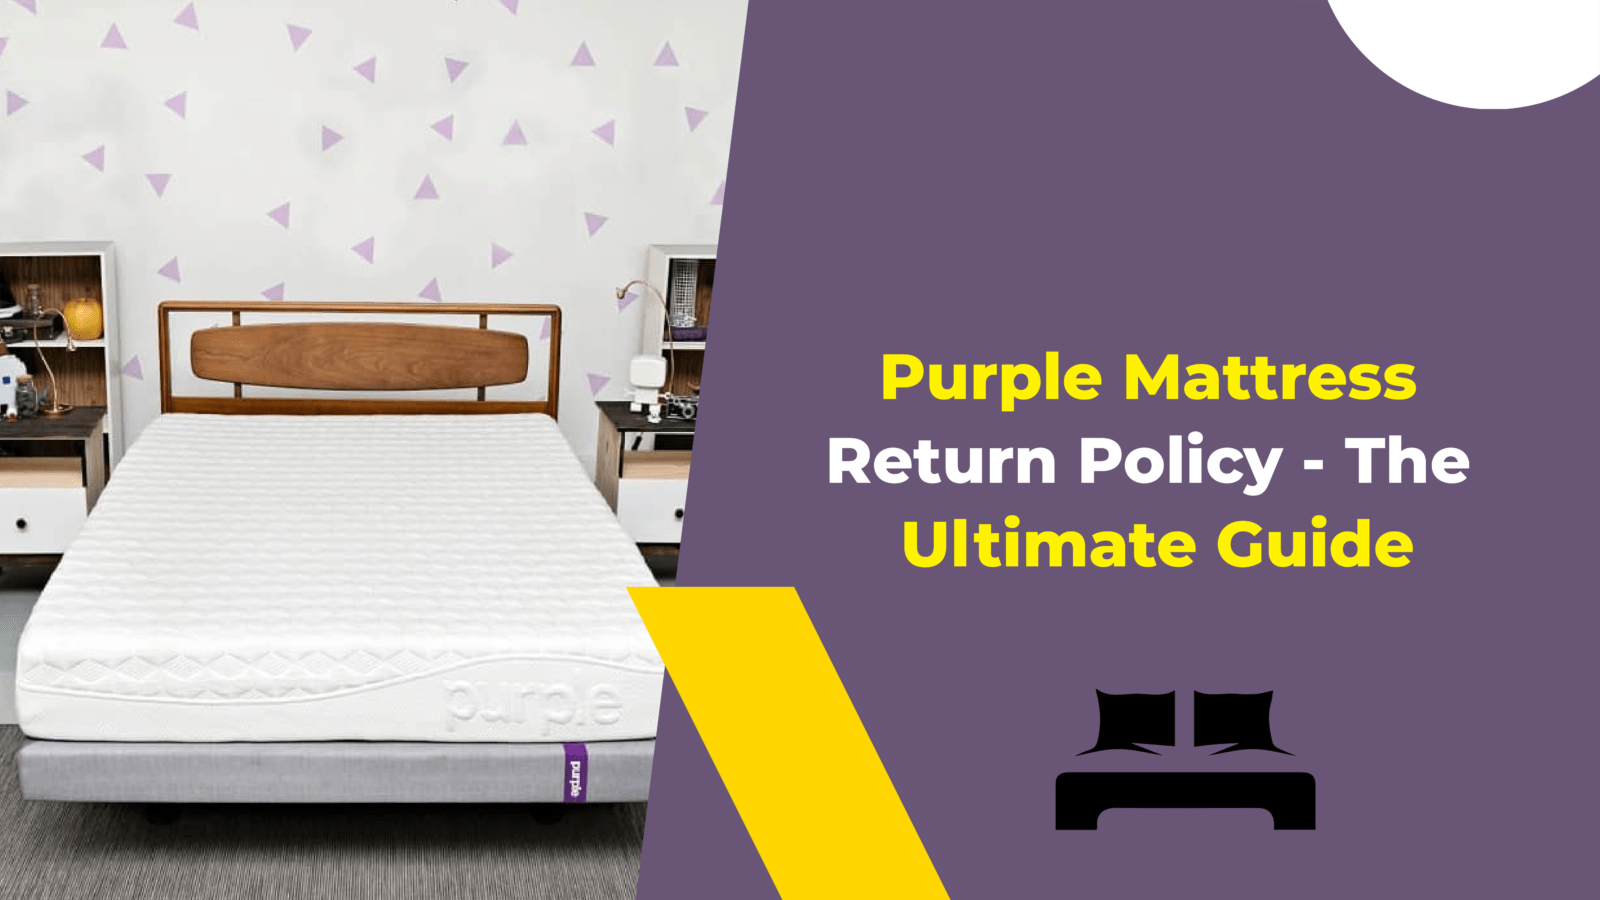 the purple mattress return